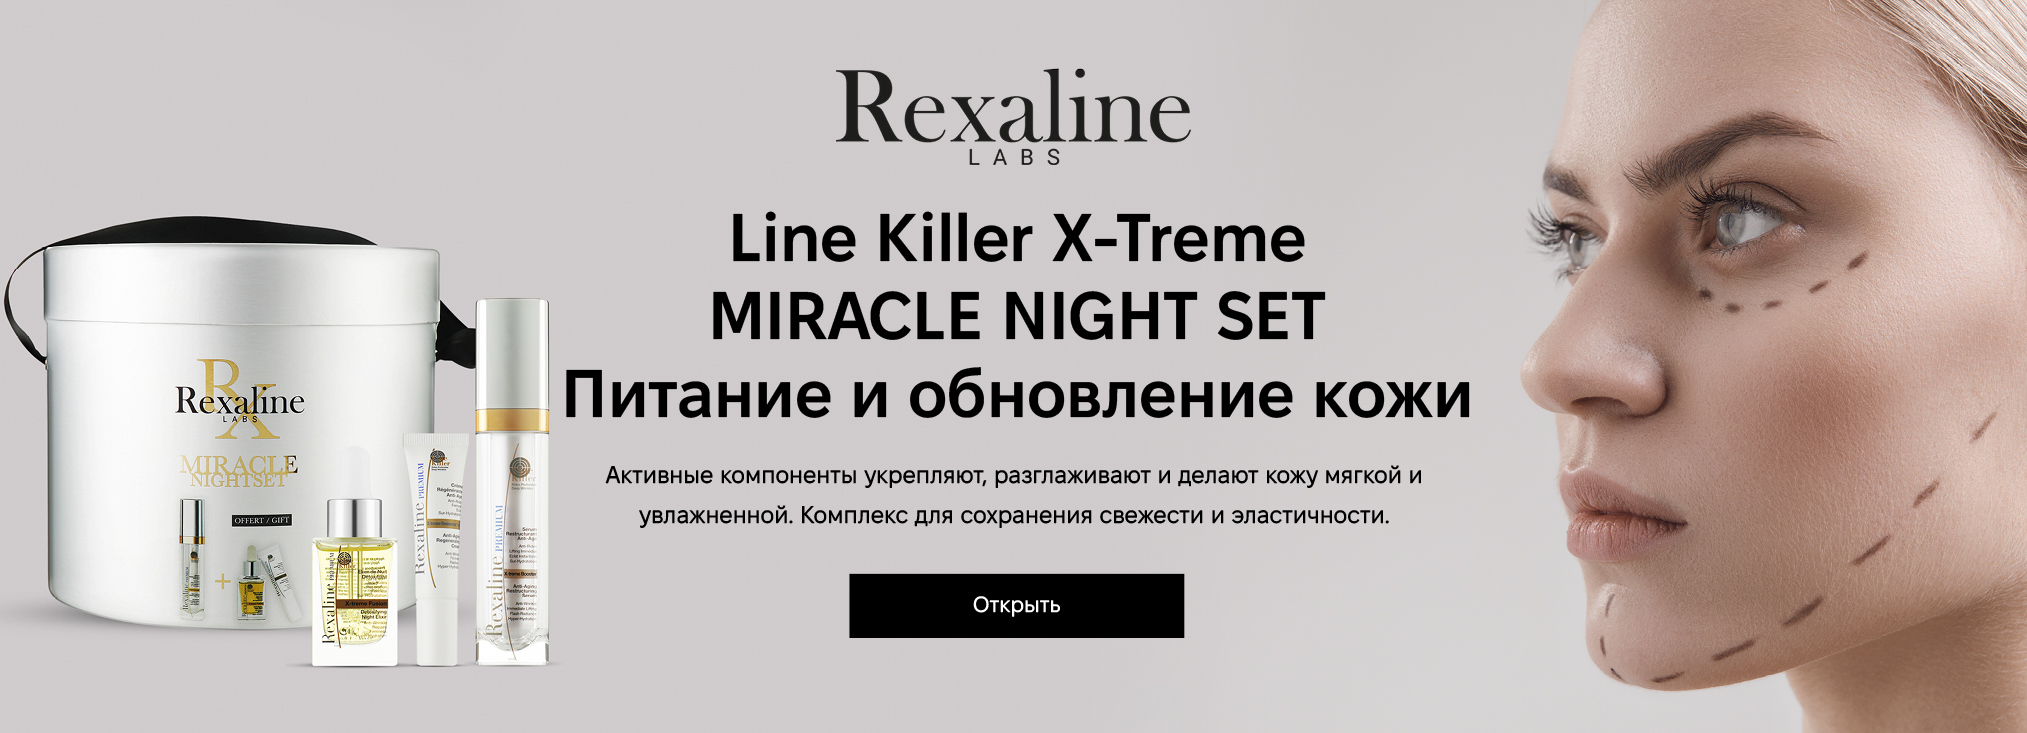 Rexaline_24090